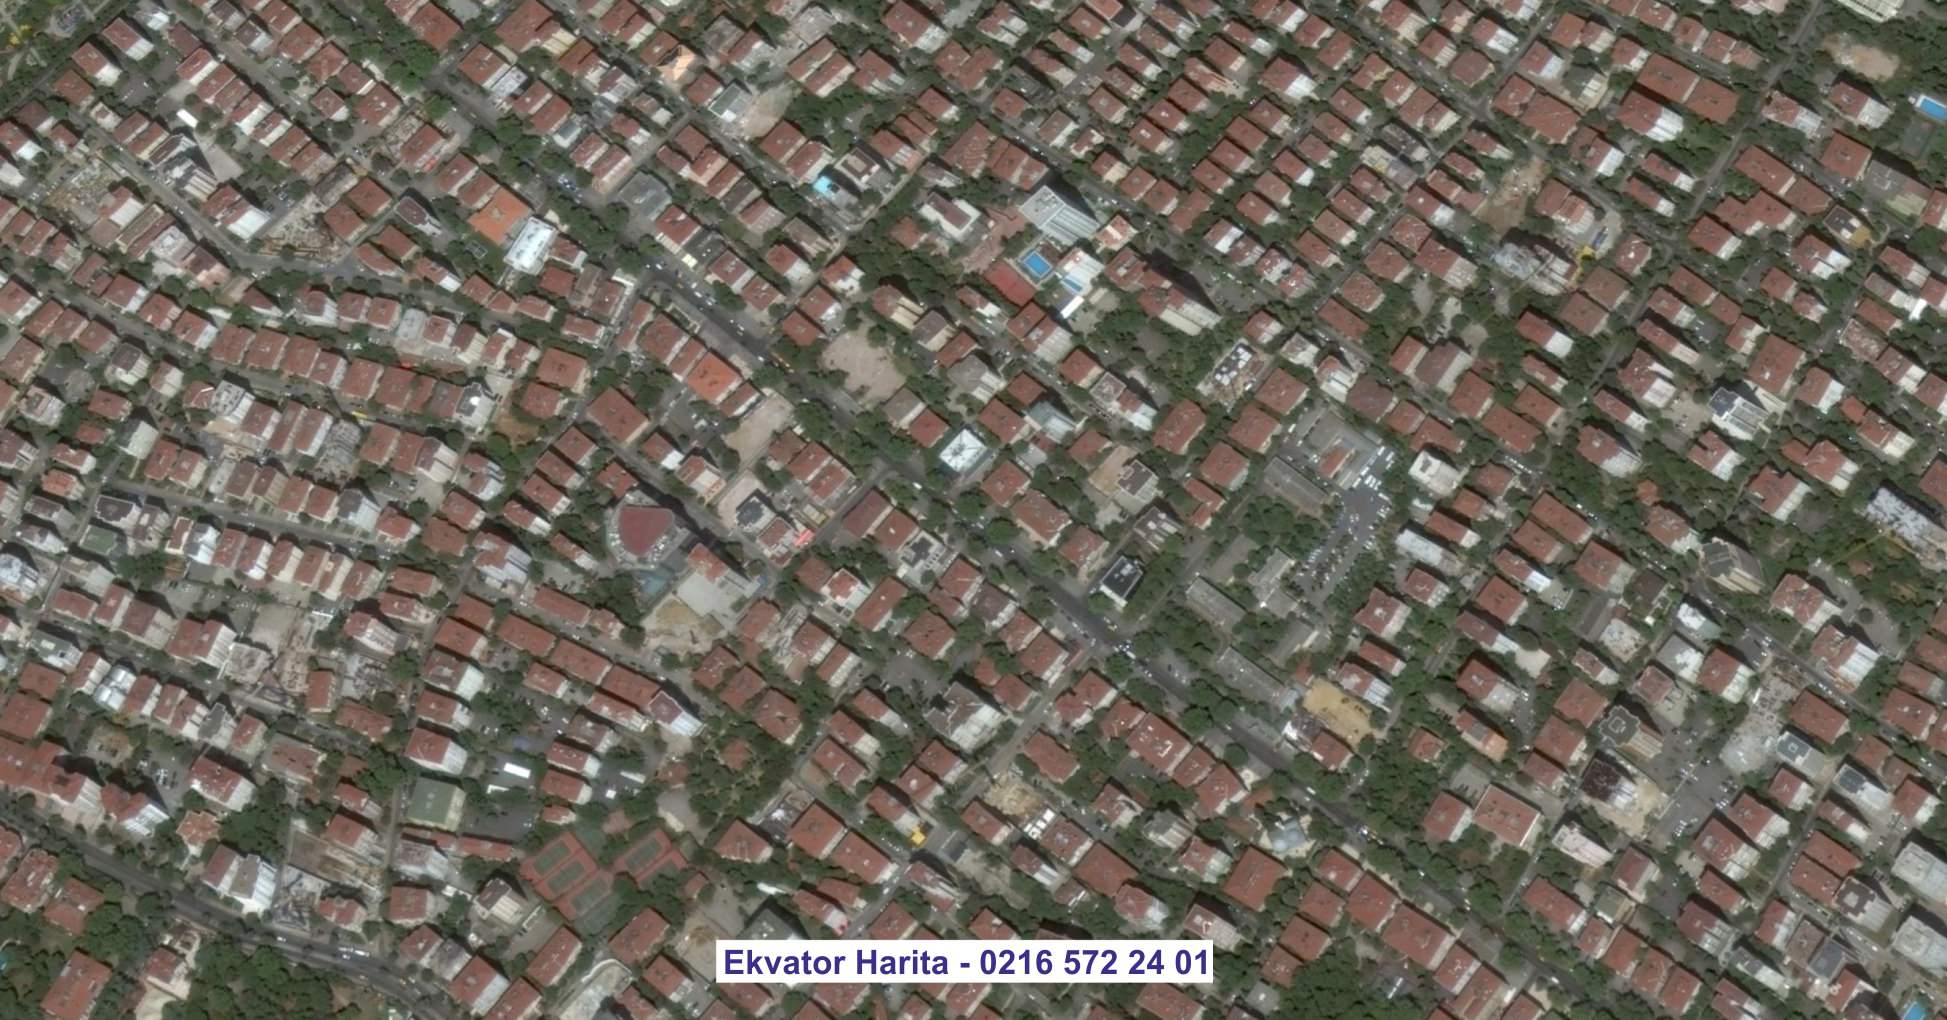 Ermenistan Uydu Görüntüsü Örnek Fotoğrafı